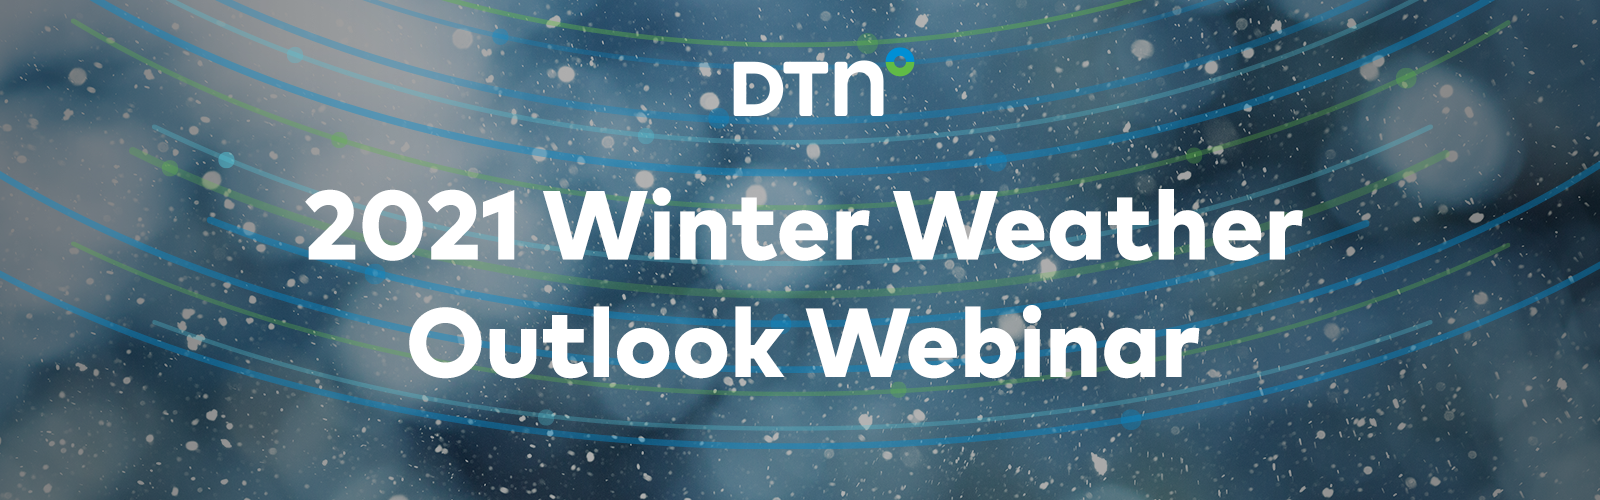 2021 Winter Weather Outlook Webinar